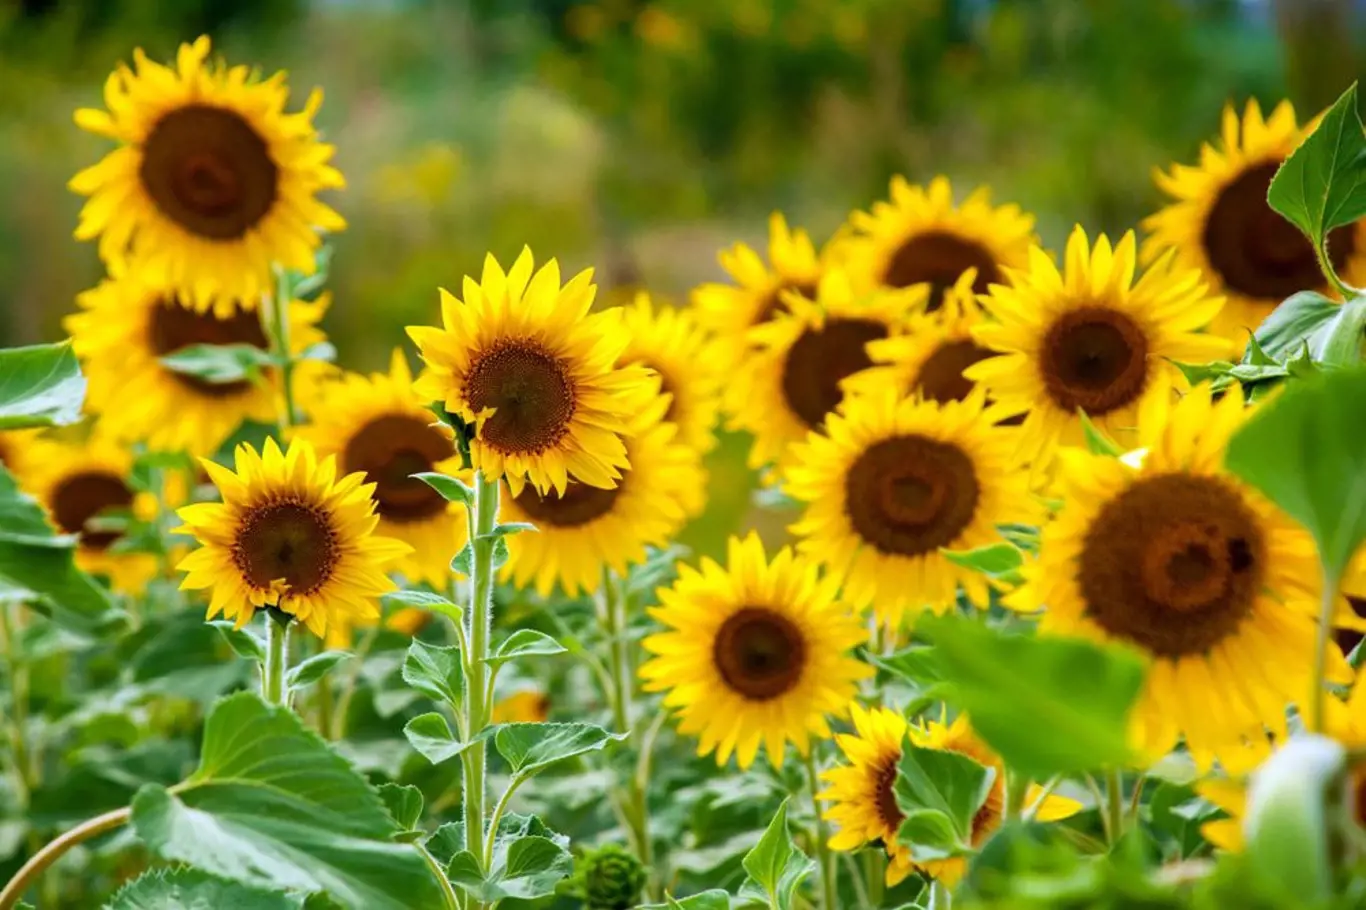 Slunečnice jsou nejen nádherné, ale také jedlé - nejen semena, ale i květní úbory